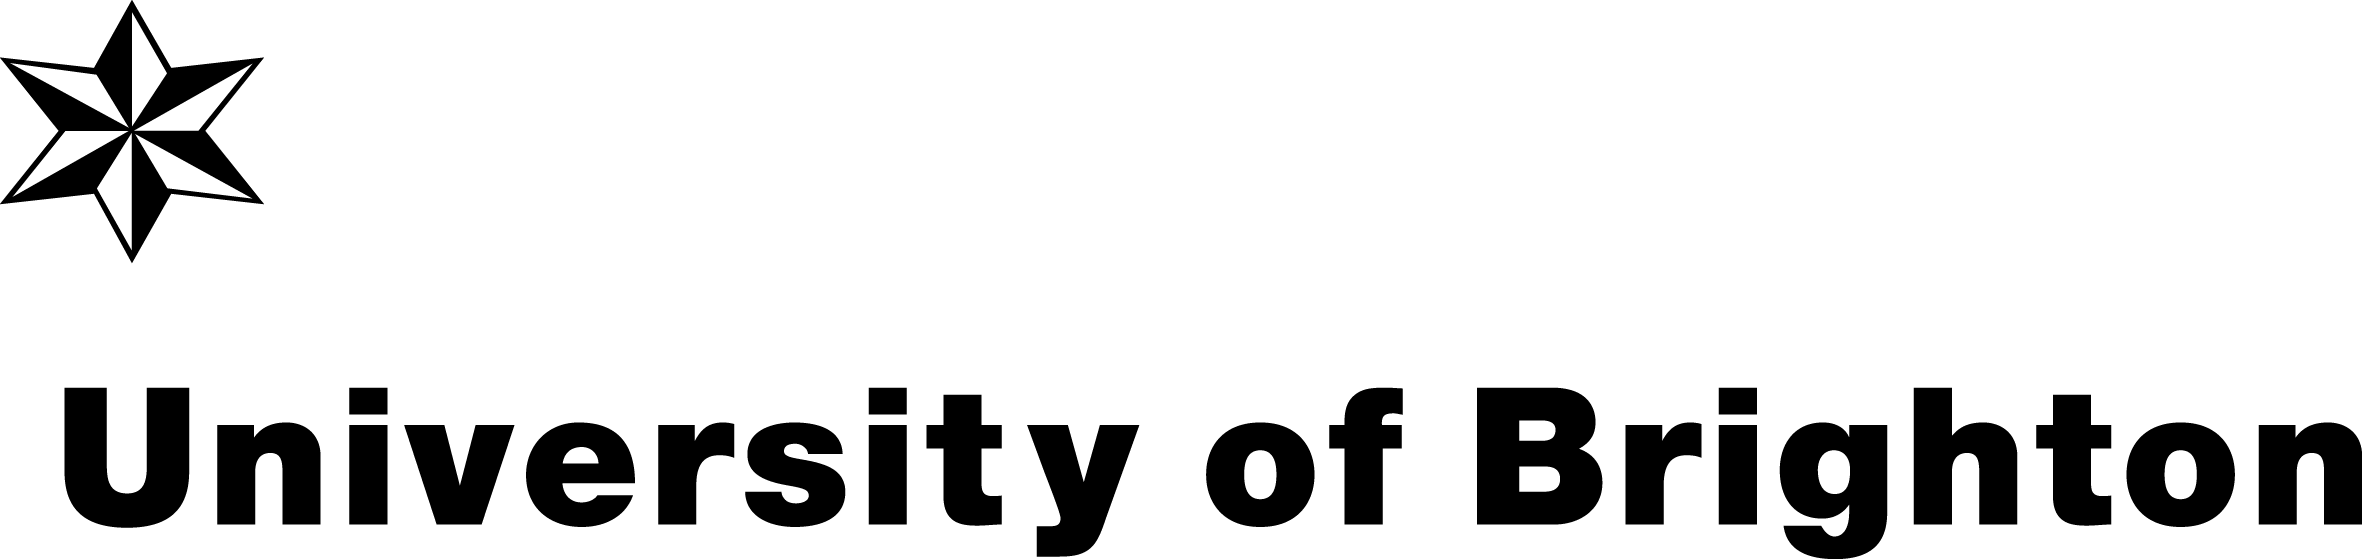 UoB logo Illustrator black